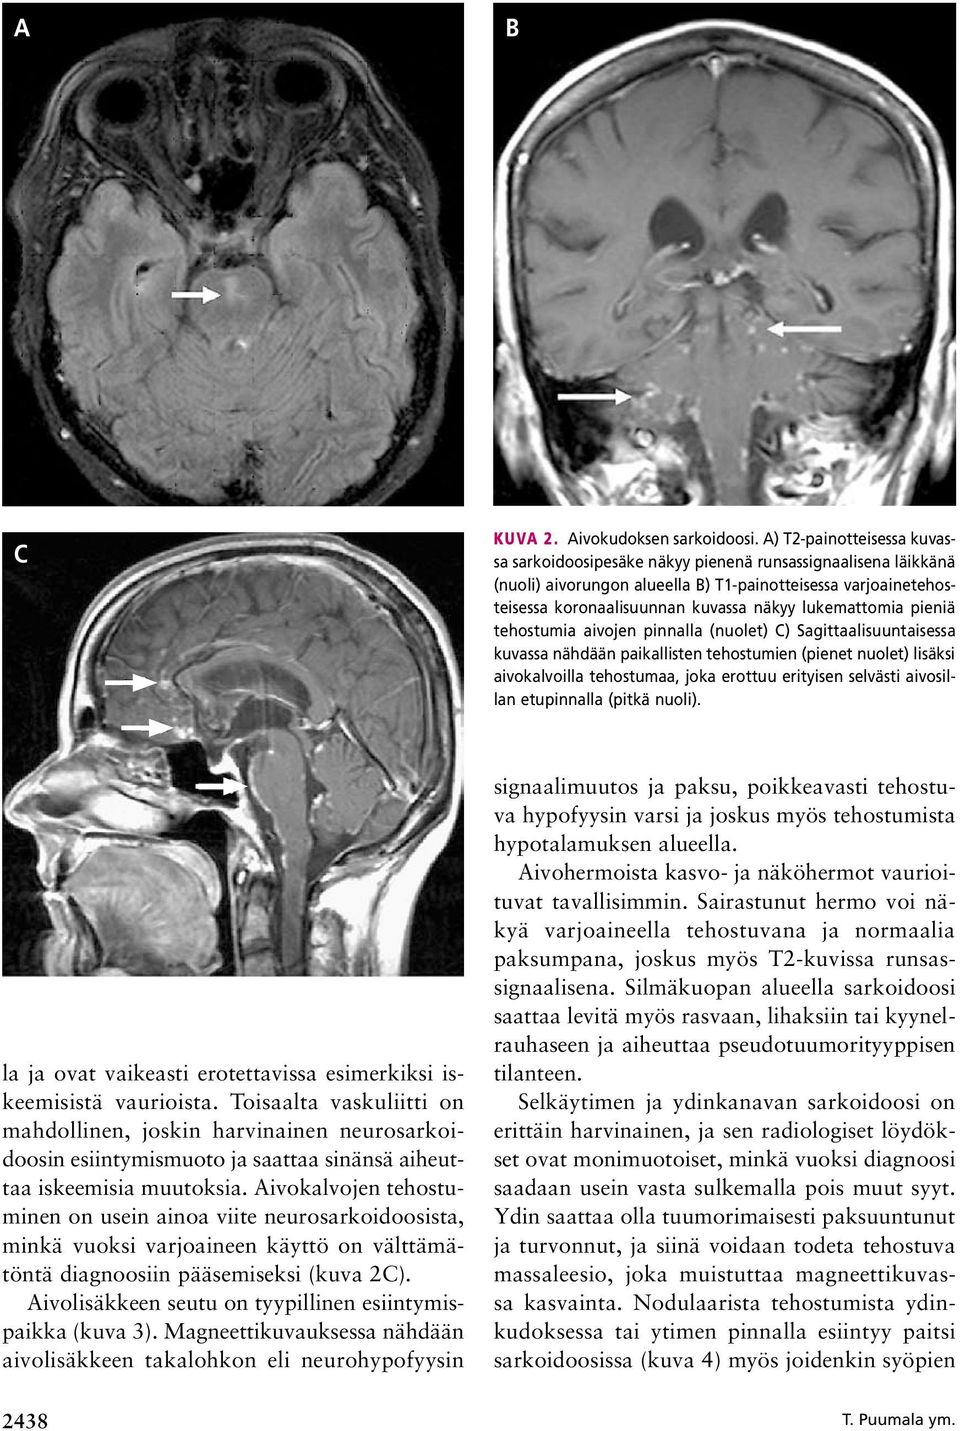 lukemattomia pieniä tehostumia aivojen pinnalla (nuolet) C) Sagittaalisuuntaisessa kuvassa nähdään paikallisten tehostumien (pienet nuolet) lisäksi aivokalvoilla tehostumaa, joka erottuu erityisen